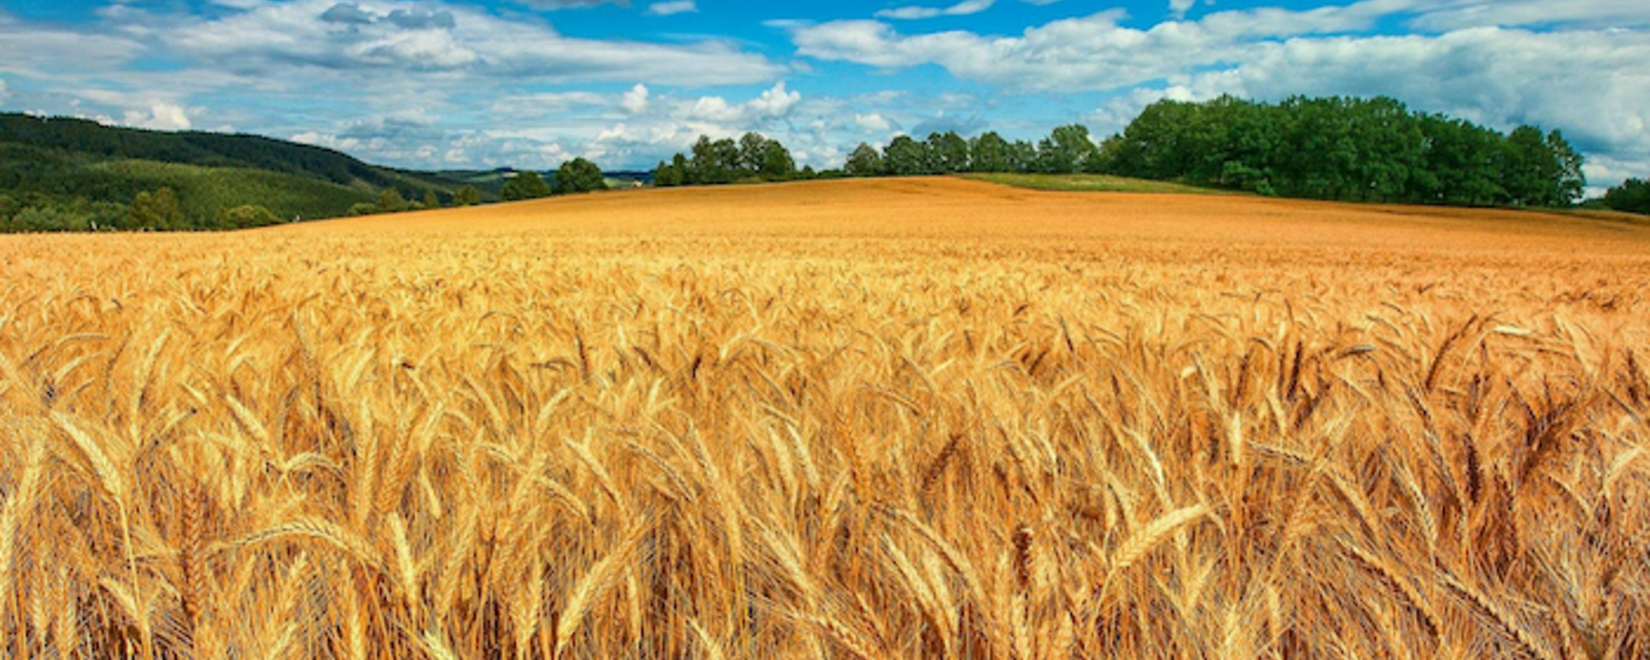 Демпинг трейдеров привел к приостановке закупки Китаем пшеницы в Продкорпорации